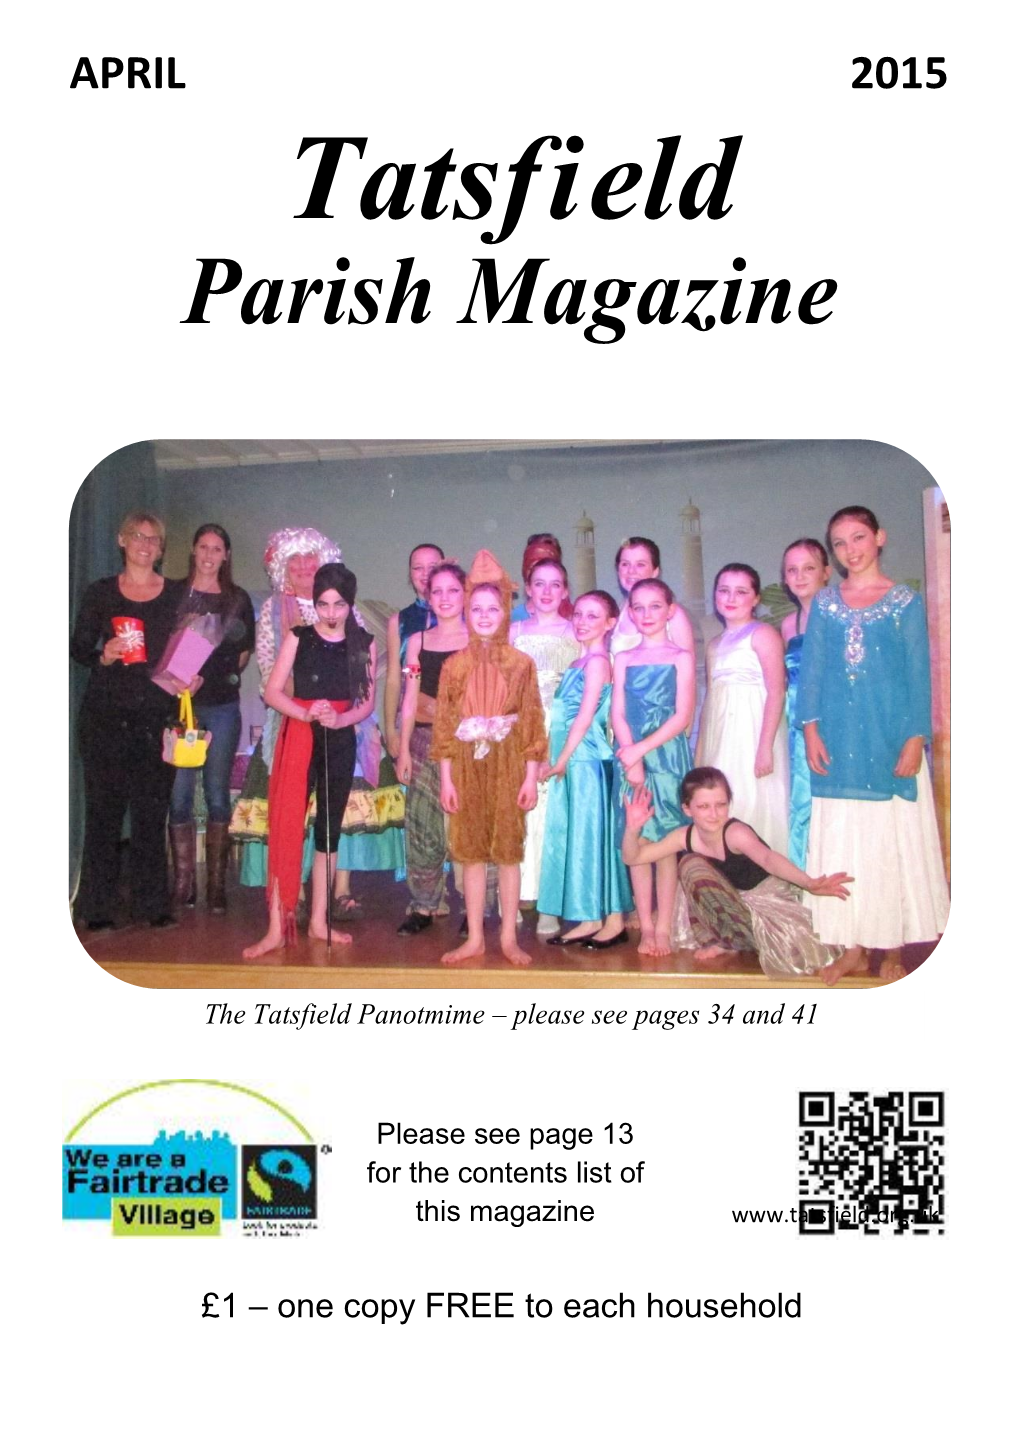 APRIL 2015 Tatsfield Parish Magazine